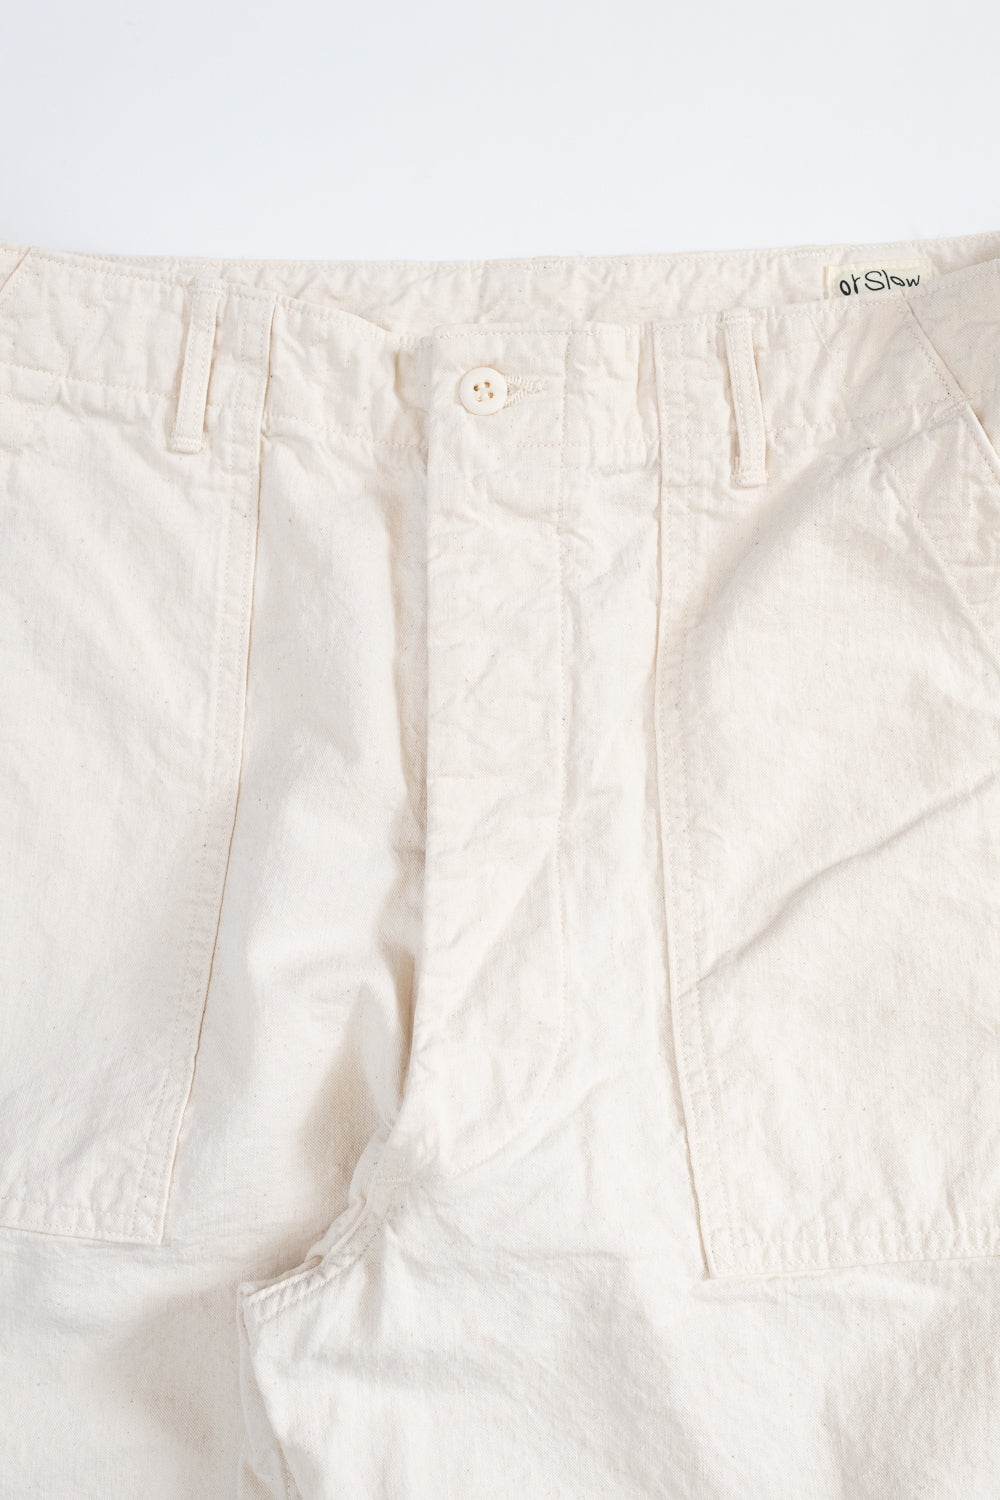 01-5103-66 - Napped Summer Fatigue Pants - Ecru